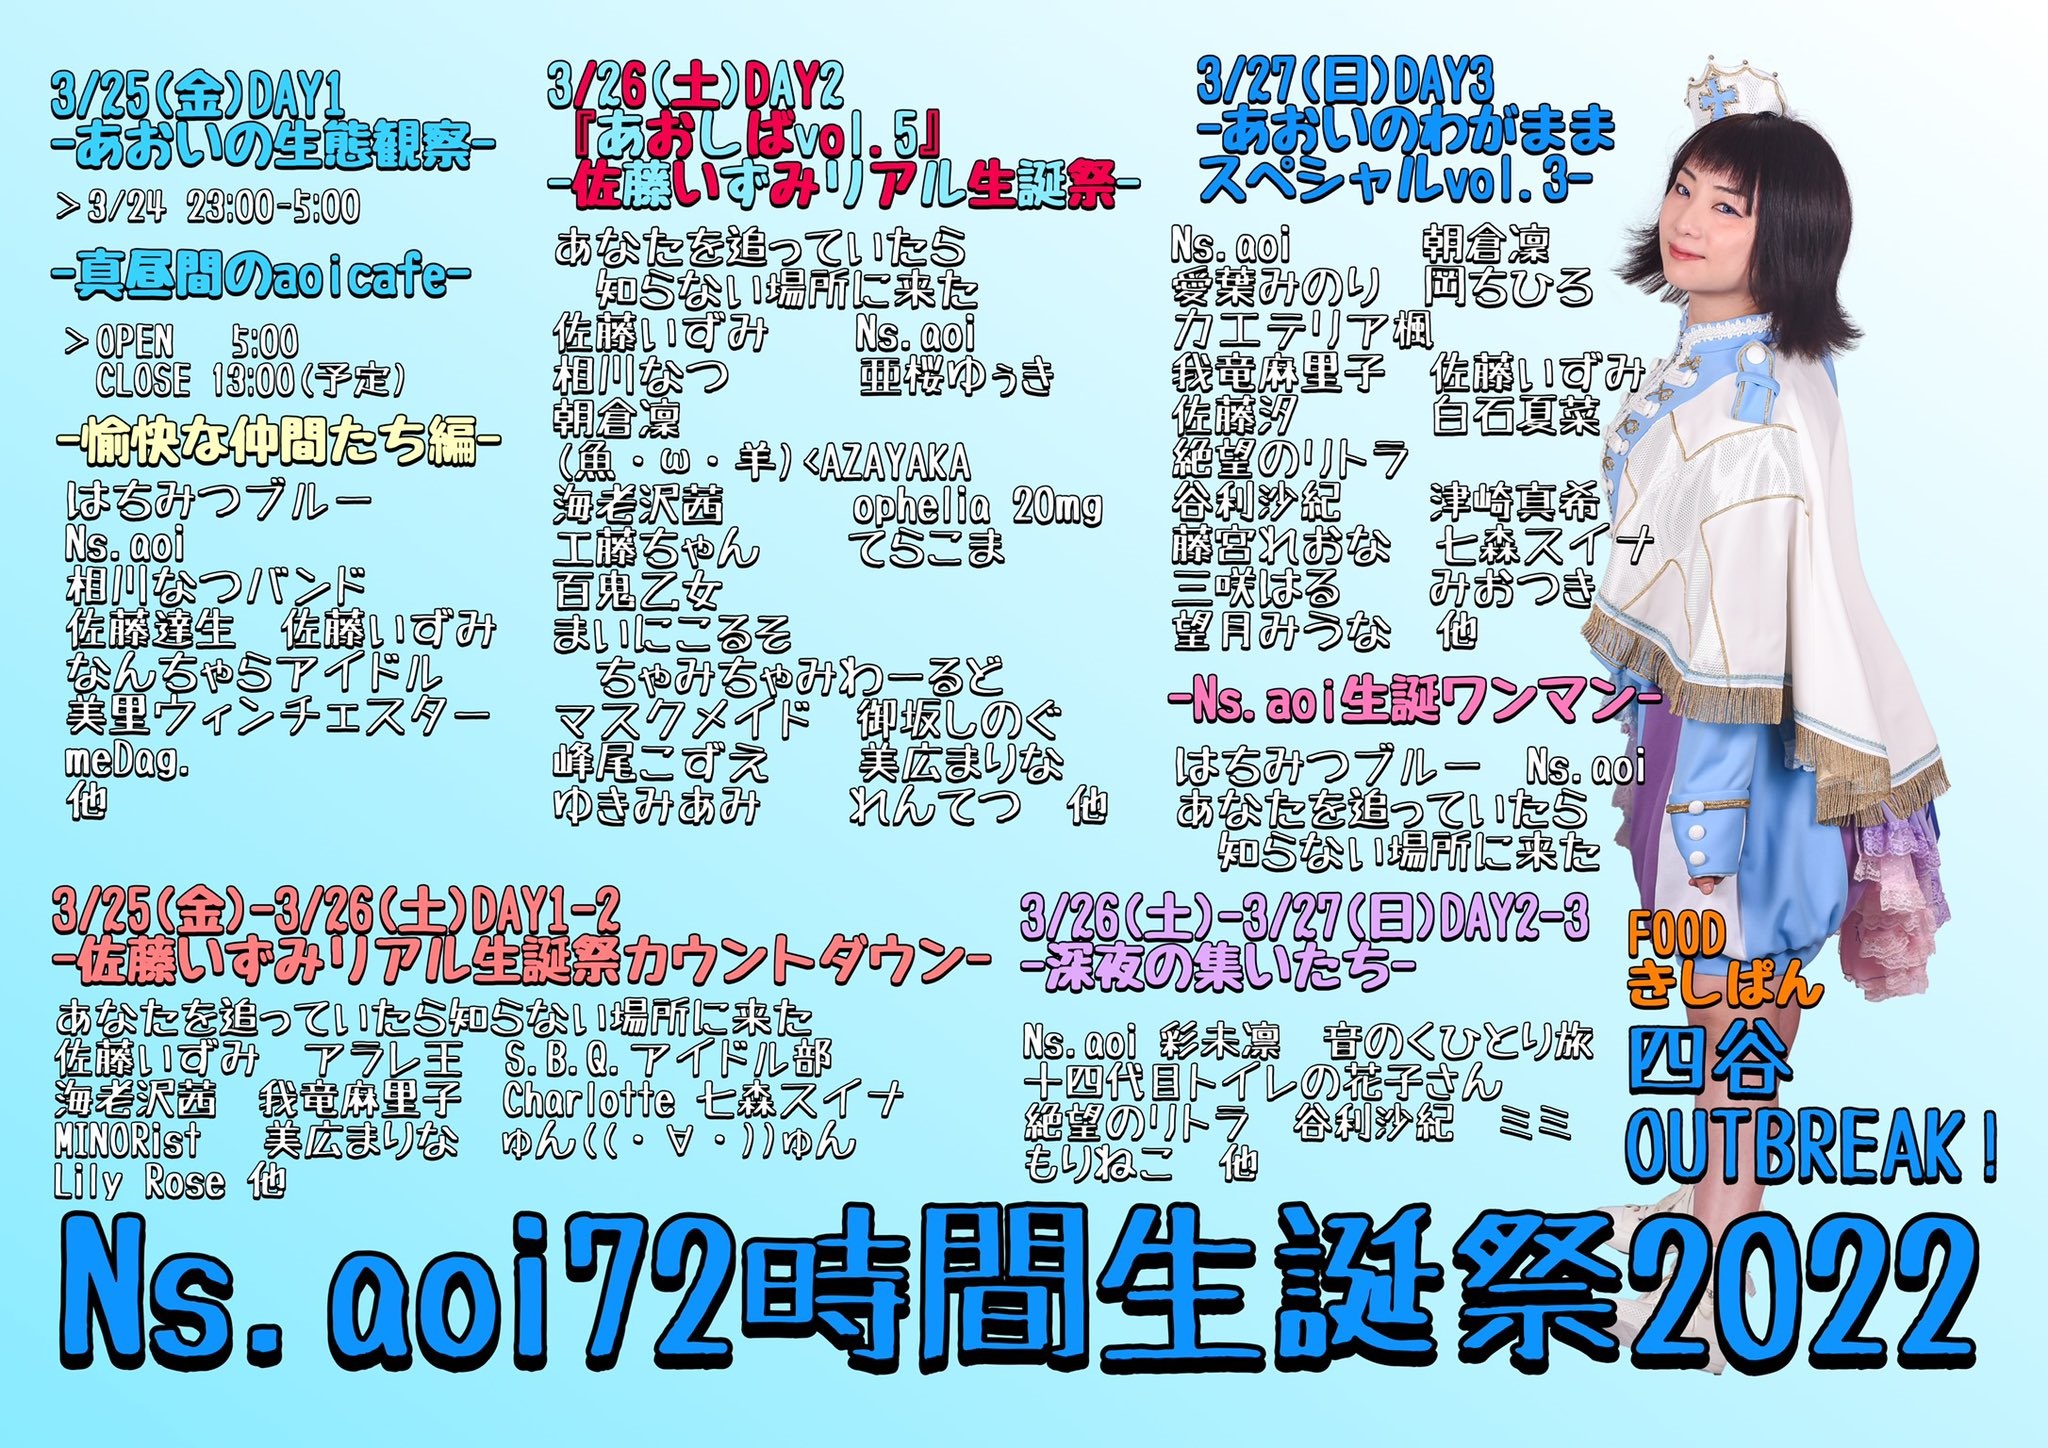 3月25日(金)、26日(土)「Ns.aoi72時間生誕祭2022」に出演します!!!